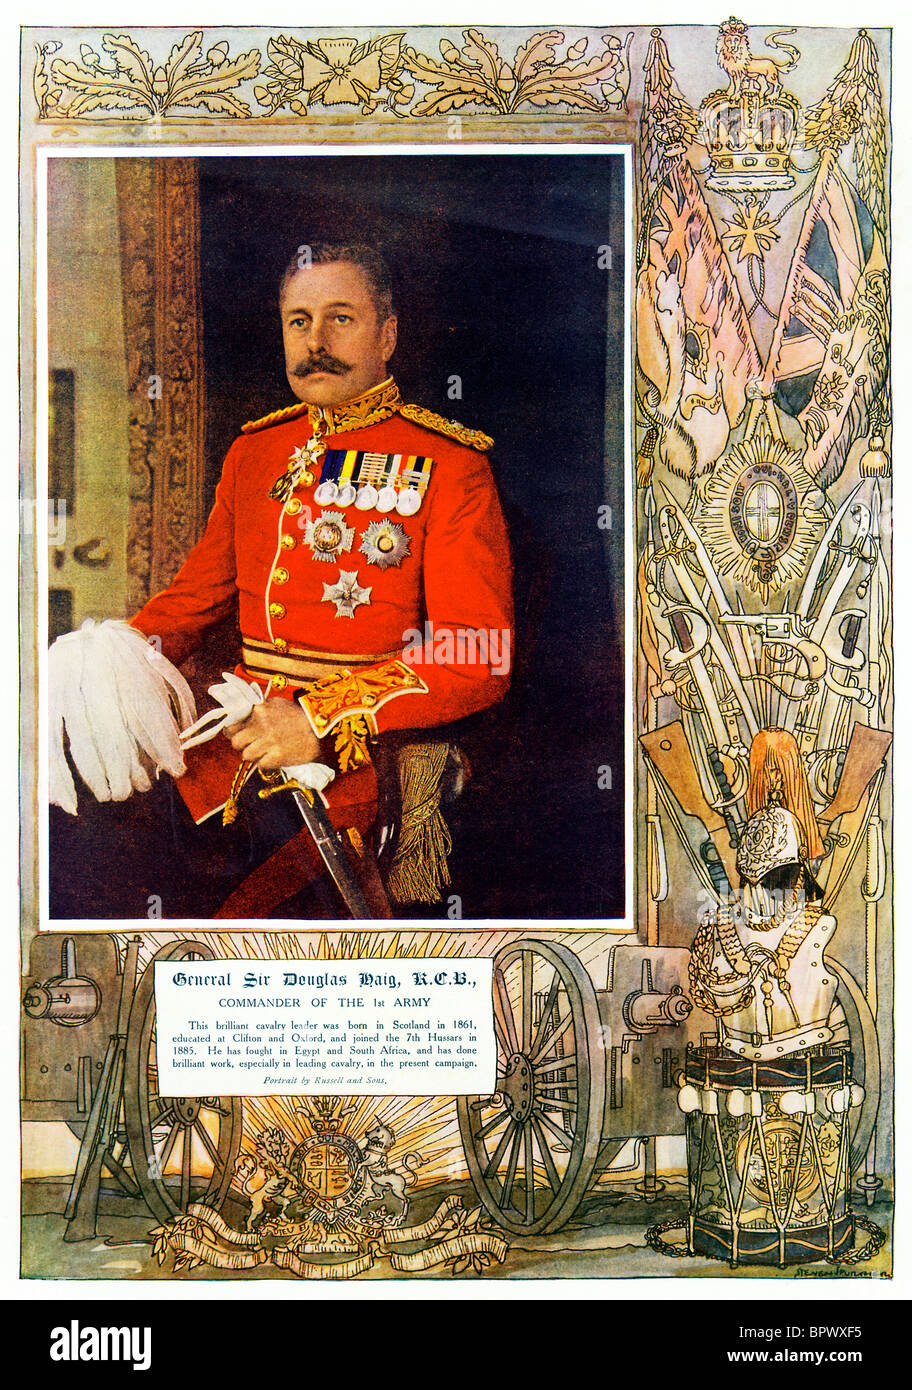 Le général Sir Douglas Haig, 1914 portrait de la famille scion du whisky qui a commandé l'Armée britannique en France Banque D'Images